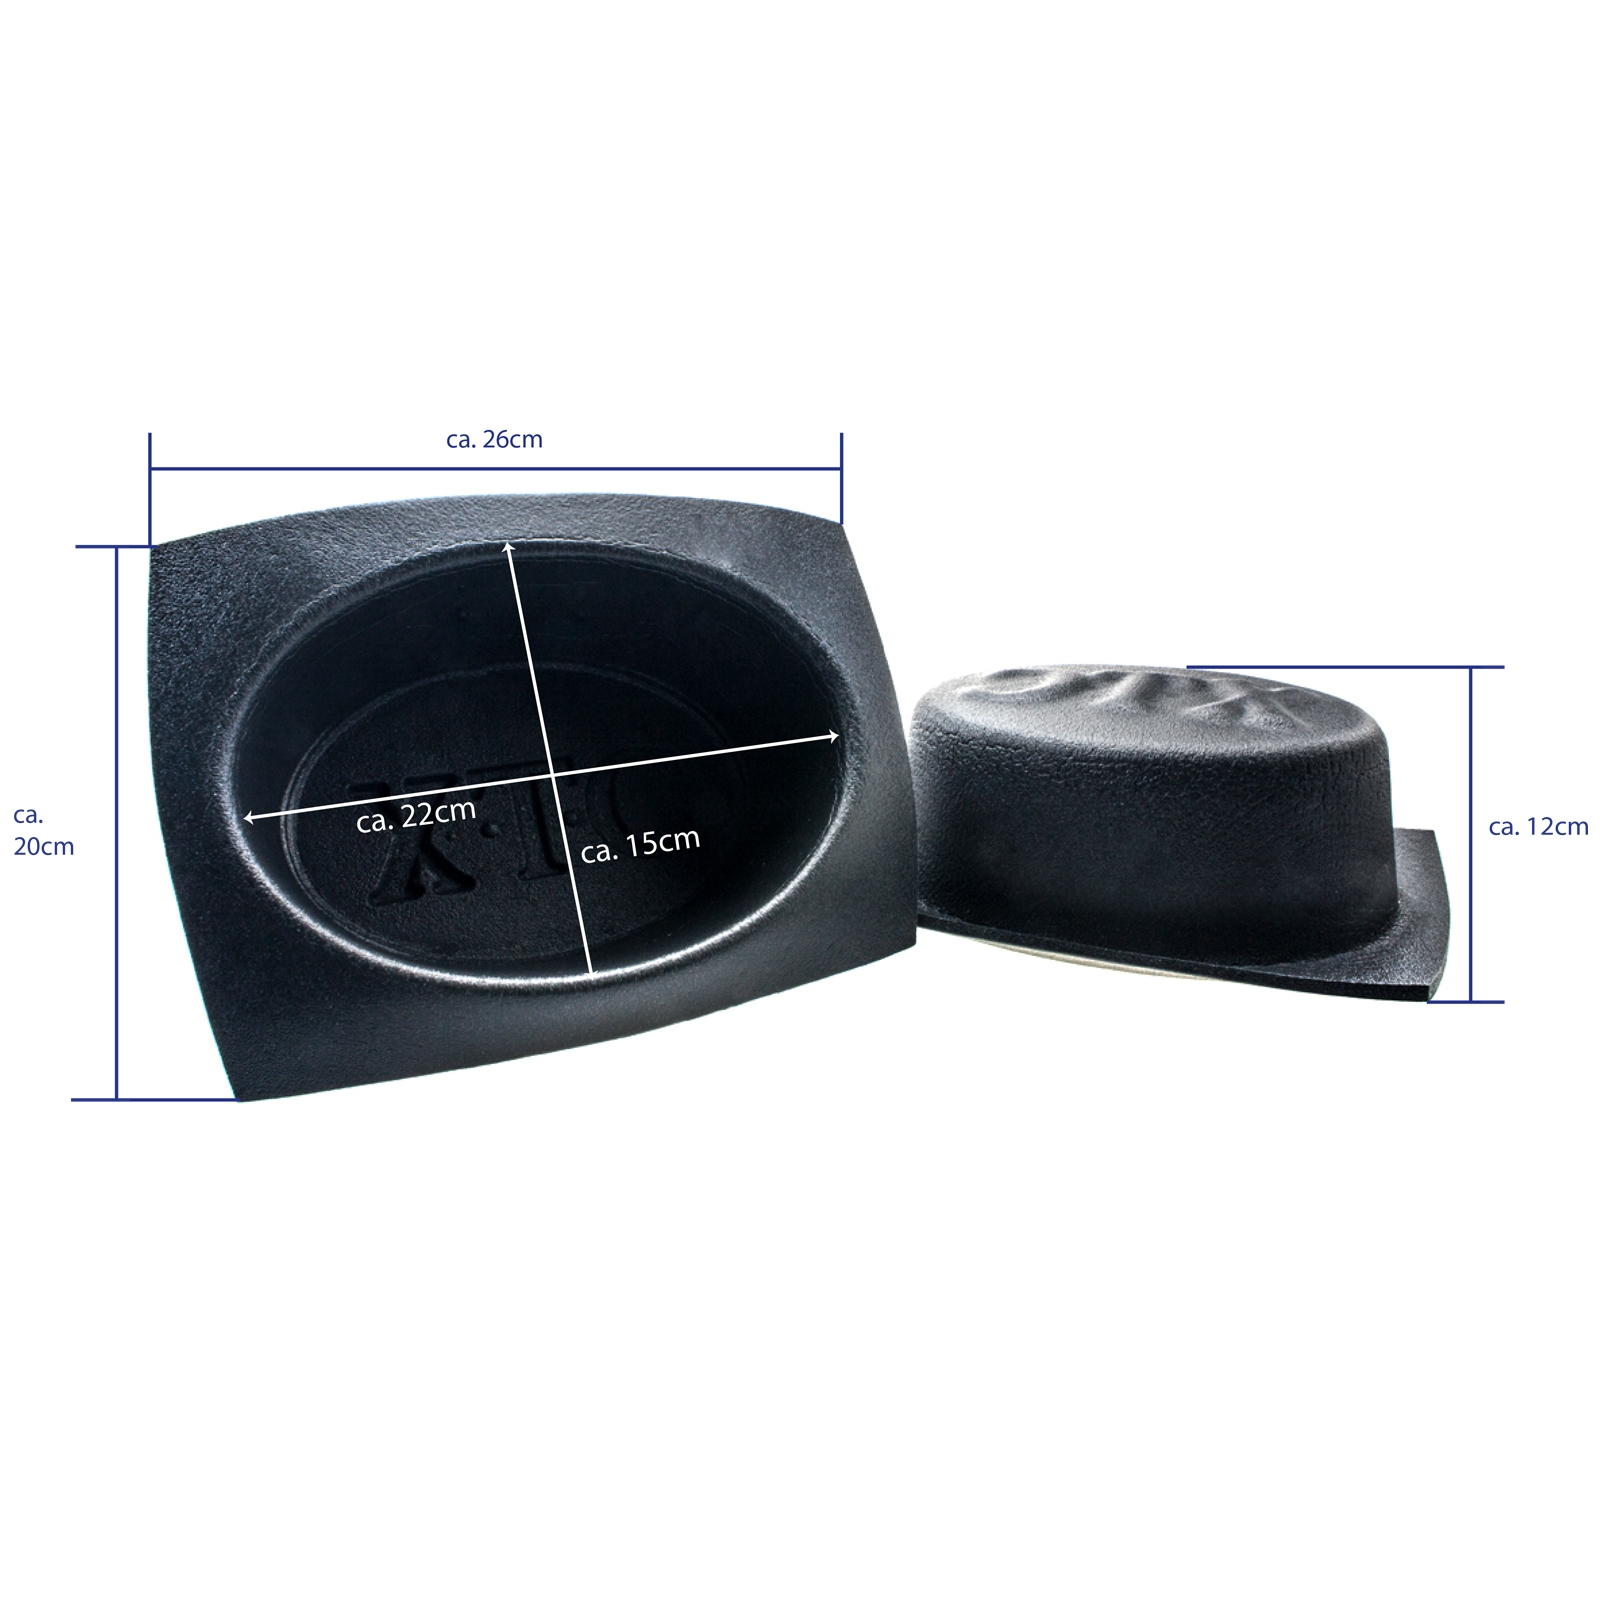 Lautsprecher-Schutzgehäuse METRA ovales VXT69 Zoll 6x9